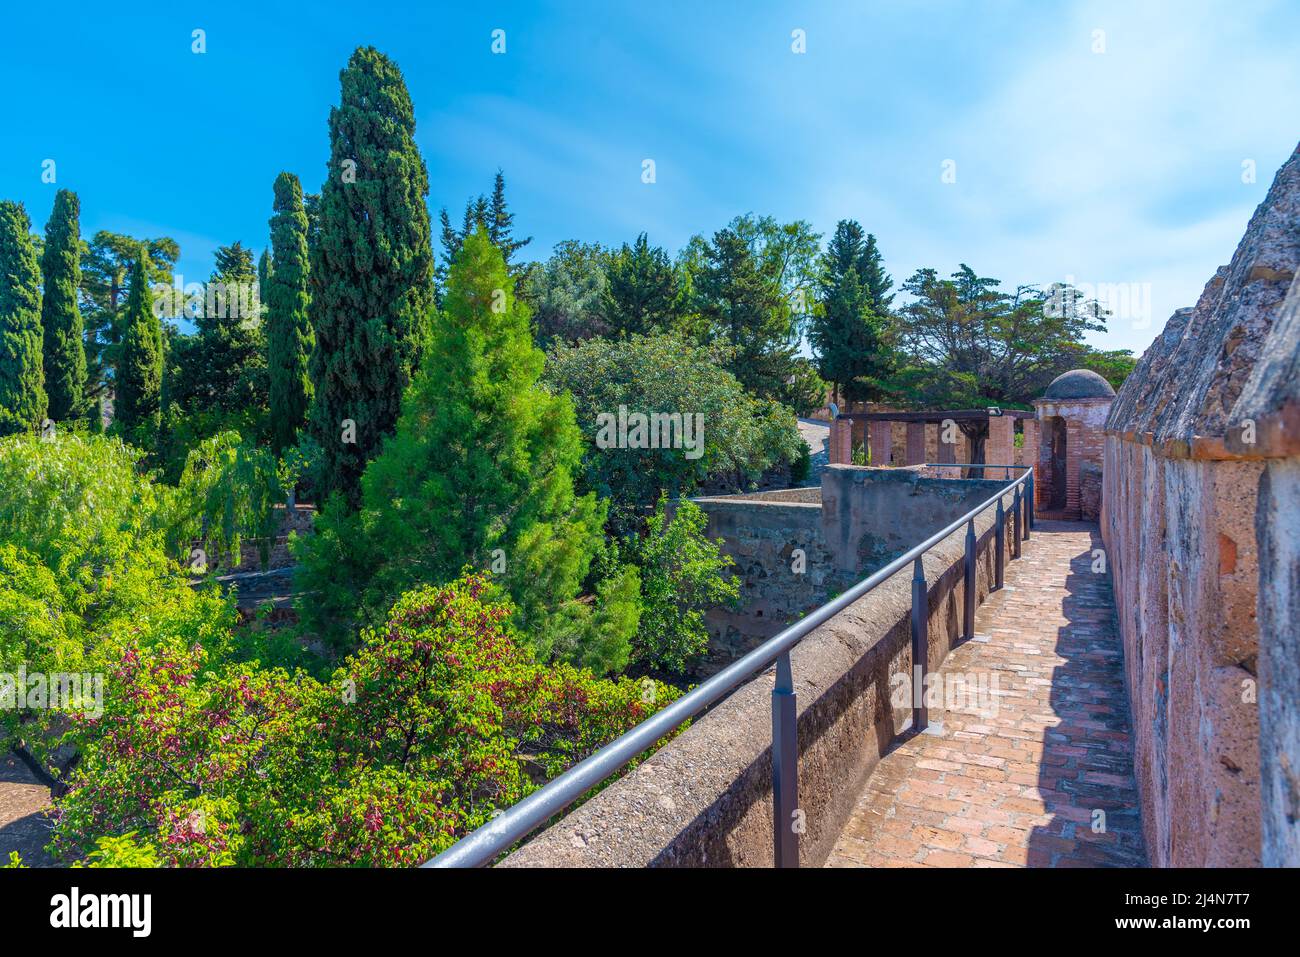 Gibralfaro castle in the Spanish town Malaga Stock Photo